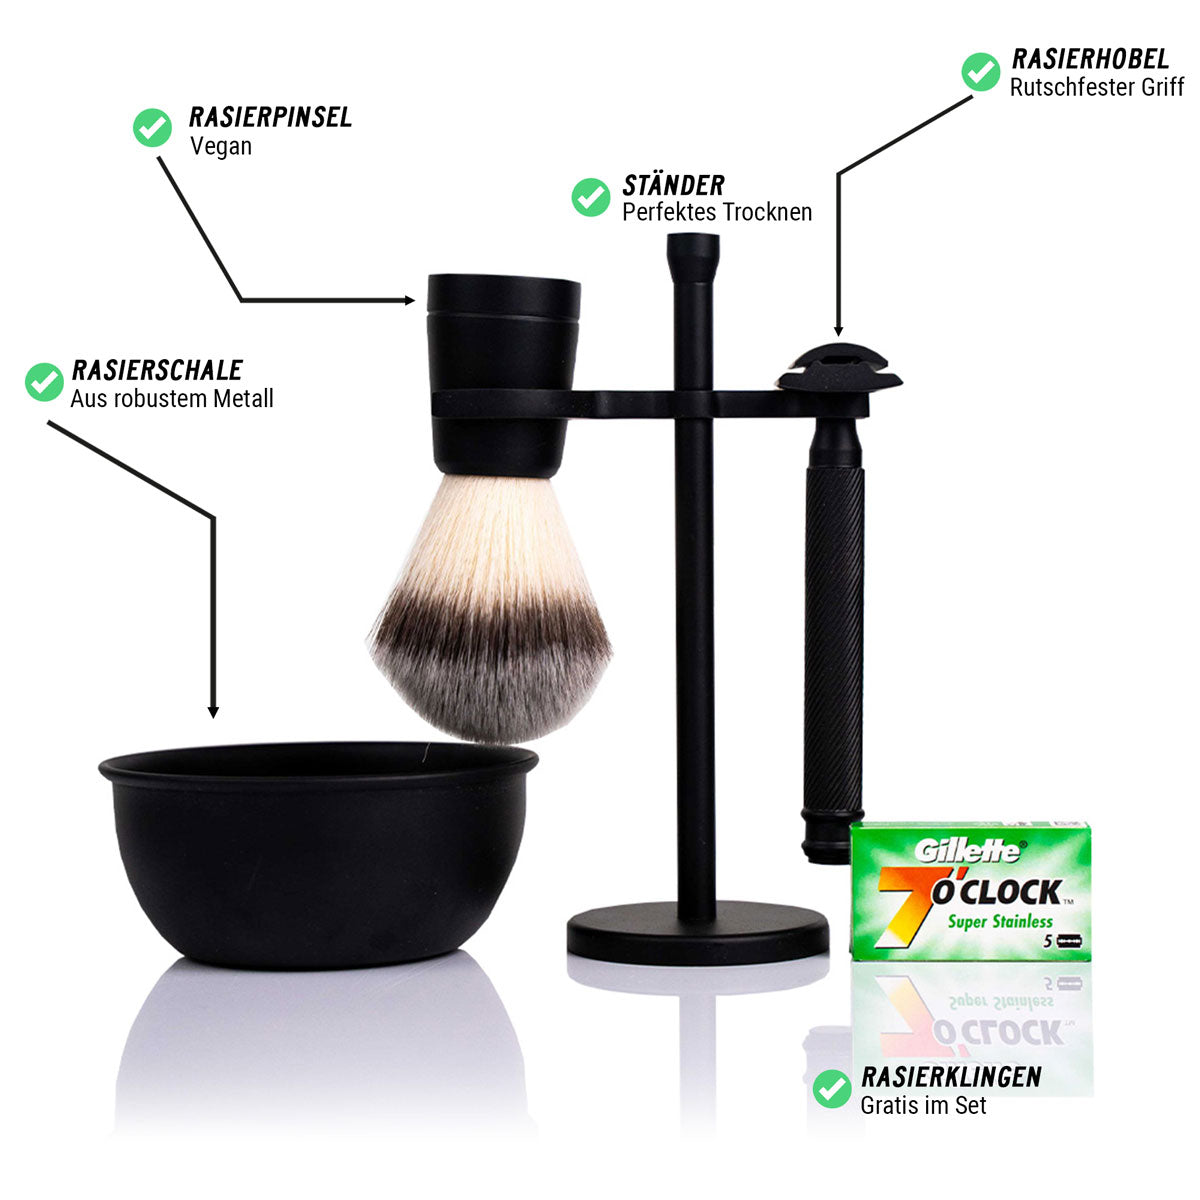 NEW: Shaving set for wet shaving | Safety razor, shaving brush, shaving bowl & free shaving soap